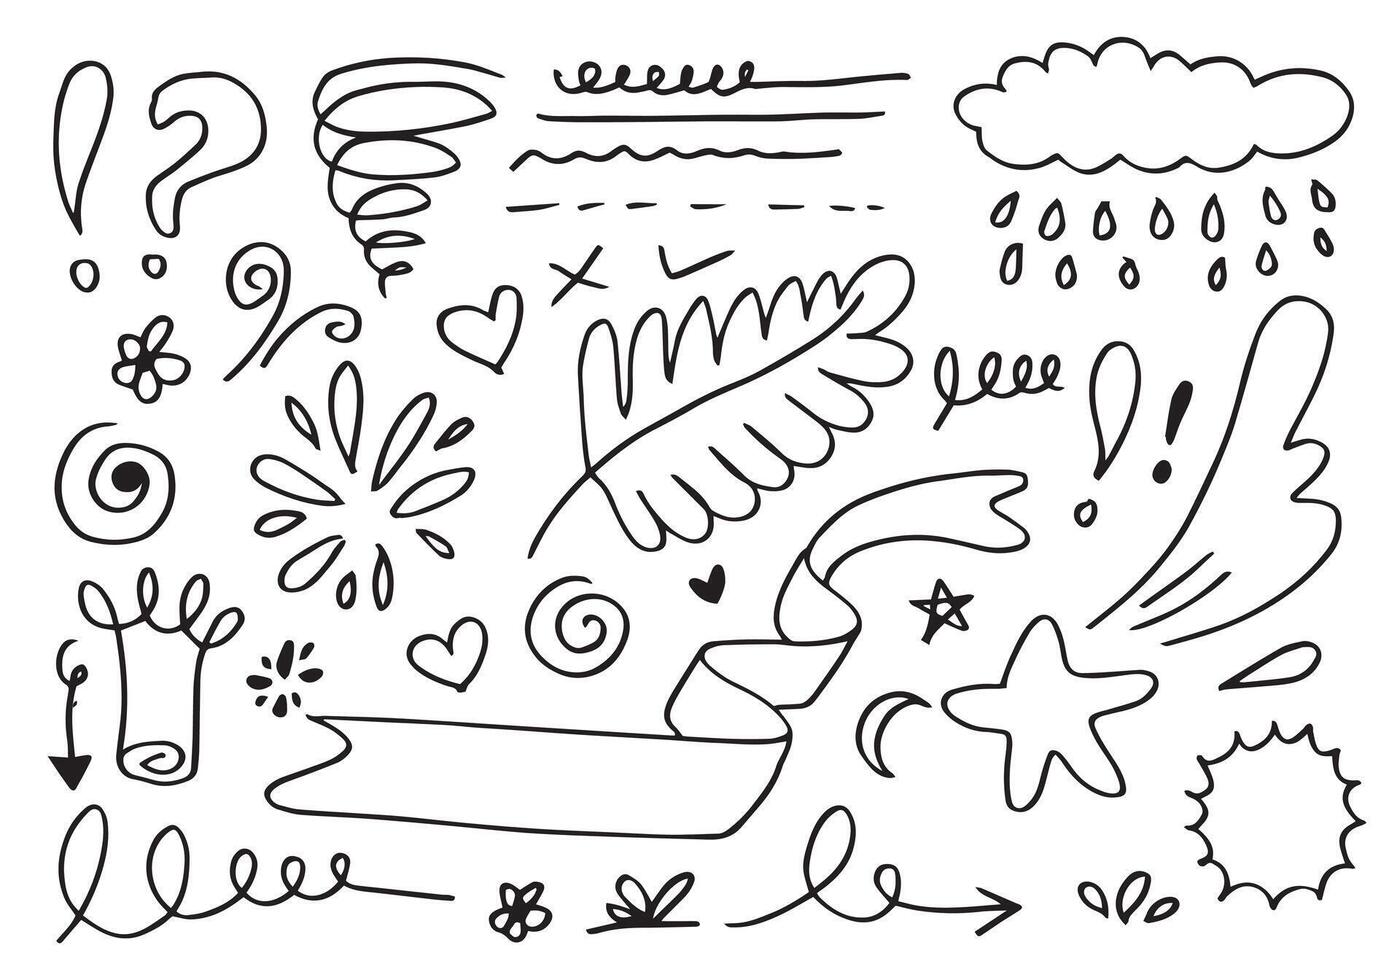 folhas, corações, abstratos, fitas, setas e outros elementos em estilos desenhados à mão para projetos conceituais. ilustração de doodle. modelo de vetor para decoração